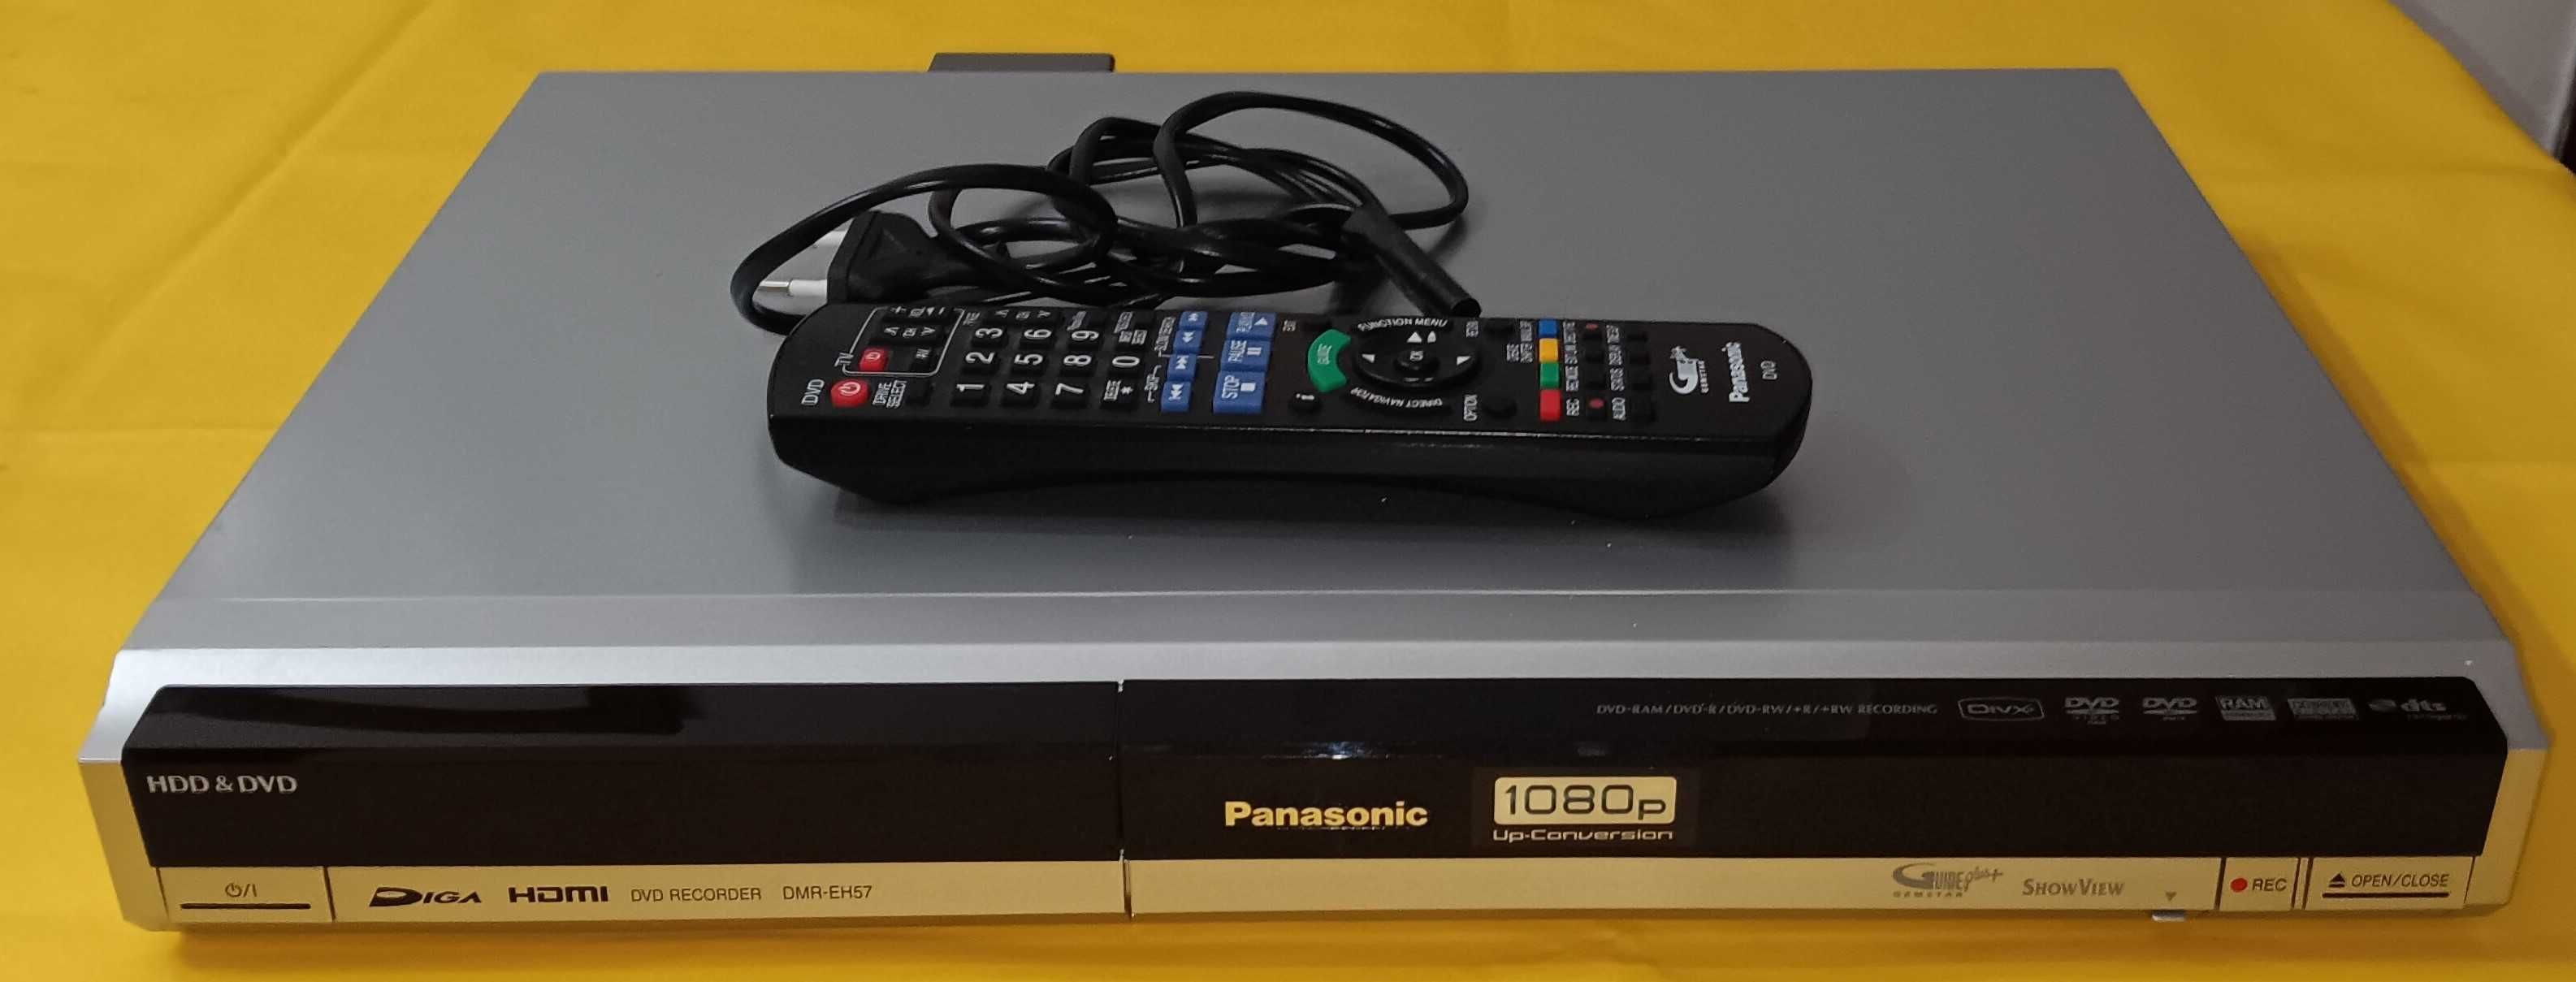 Gravador DVD Panasonic DMR-EH57 + Comando